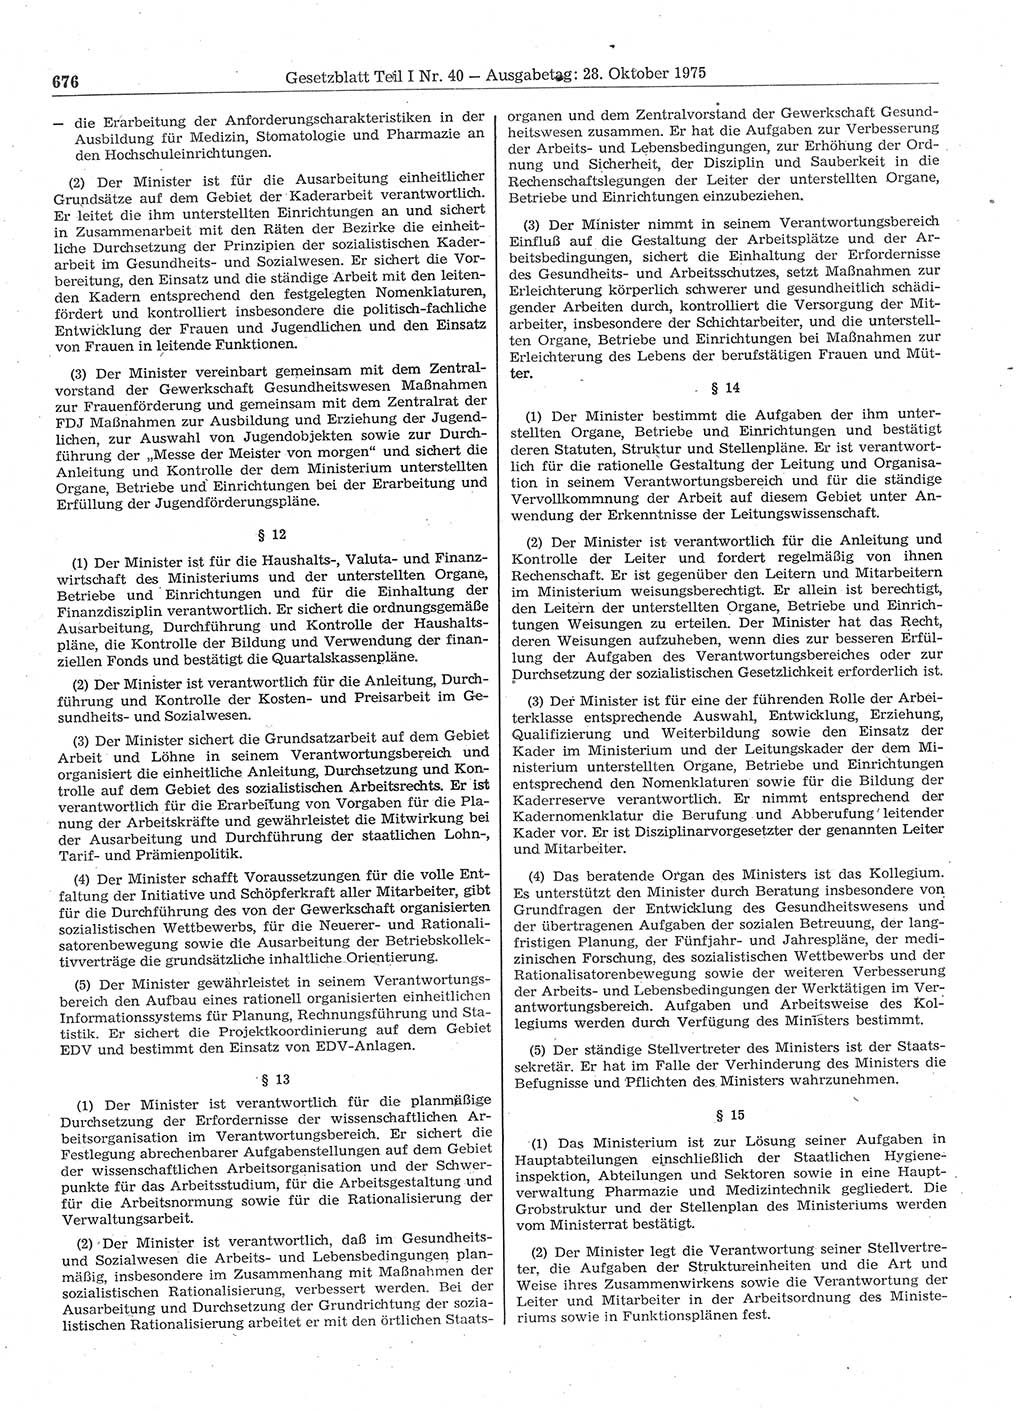 Gesetzblatt (GBl.) der Deutschen Demokratischen Republik (DDR) Teil Ⅰ 1975, Seite 676 (GBl. DDR Ⅰ 1975, S. 676)